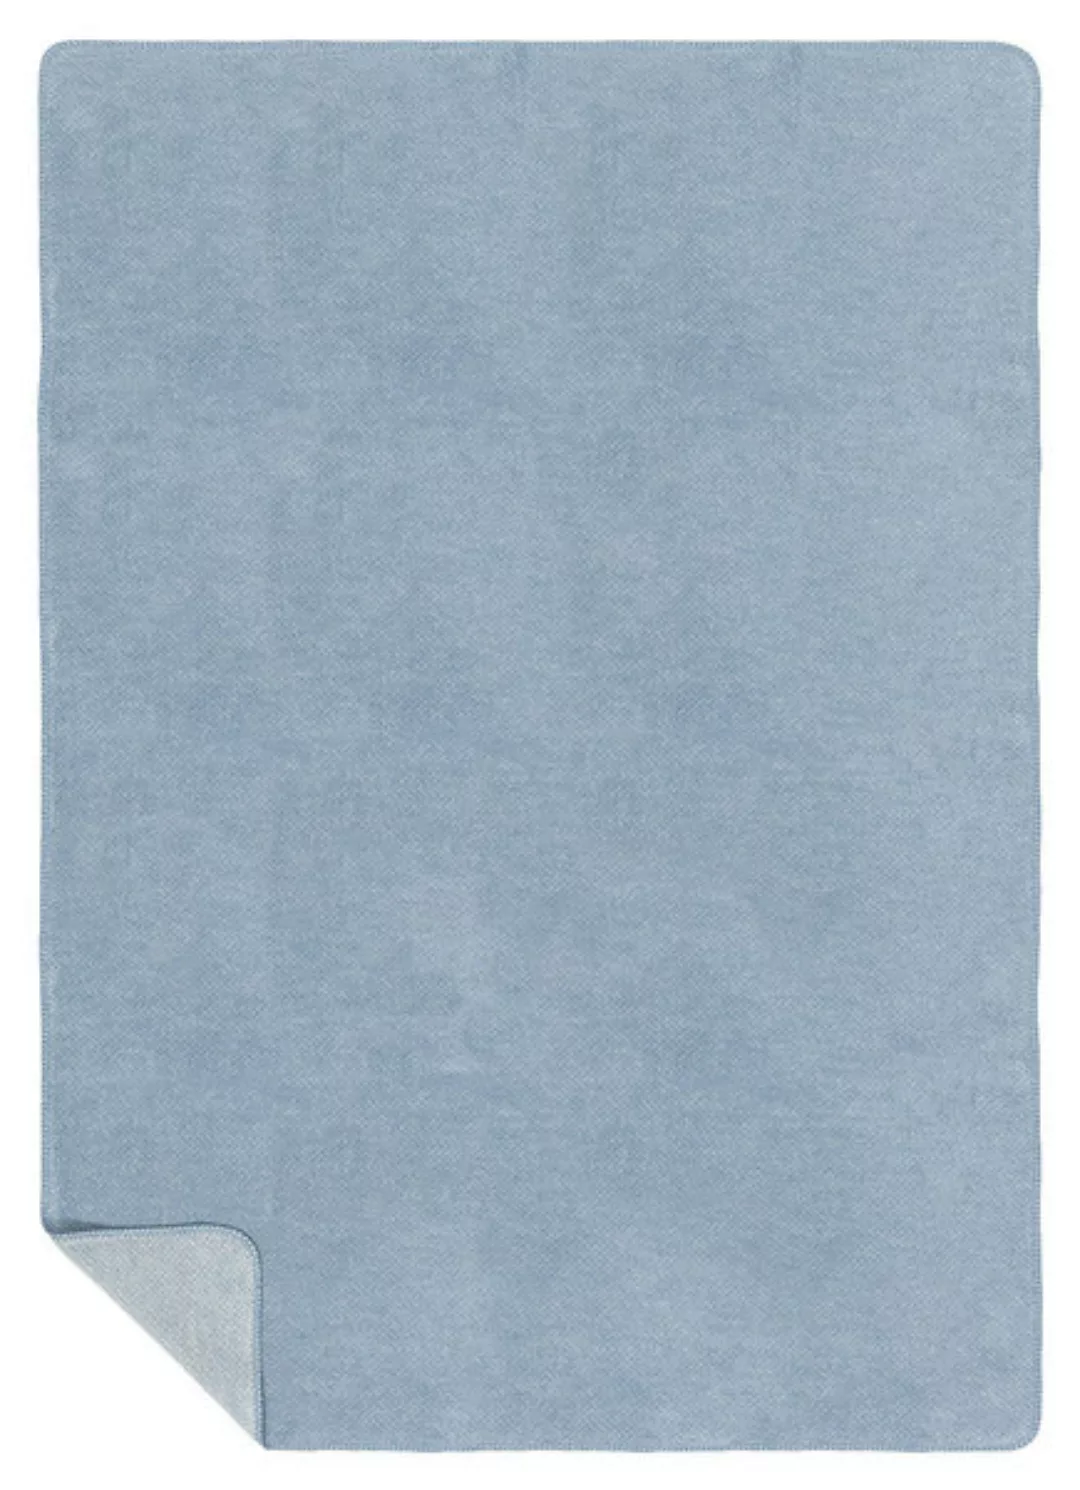 Richter Textilien Bio Wohndecke Baumwolle hellblau Gr. 150 x 200 günstig online kaufen